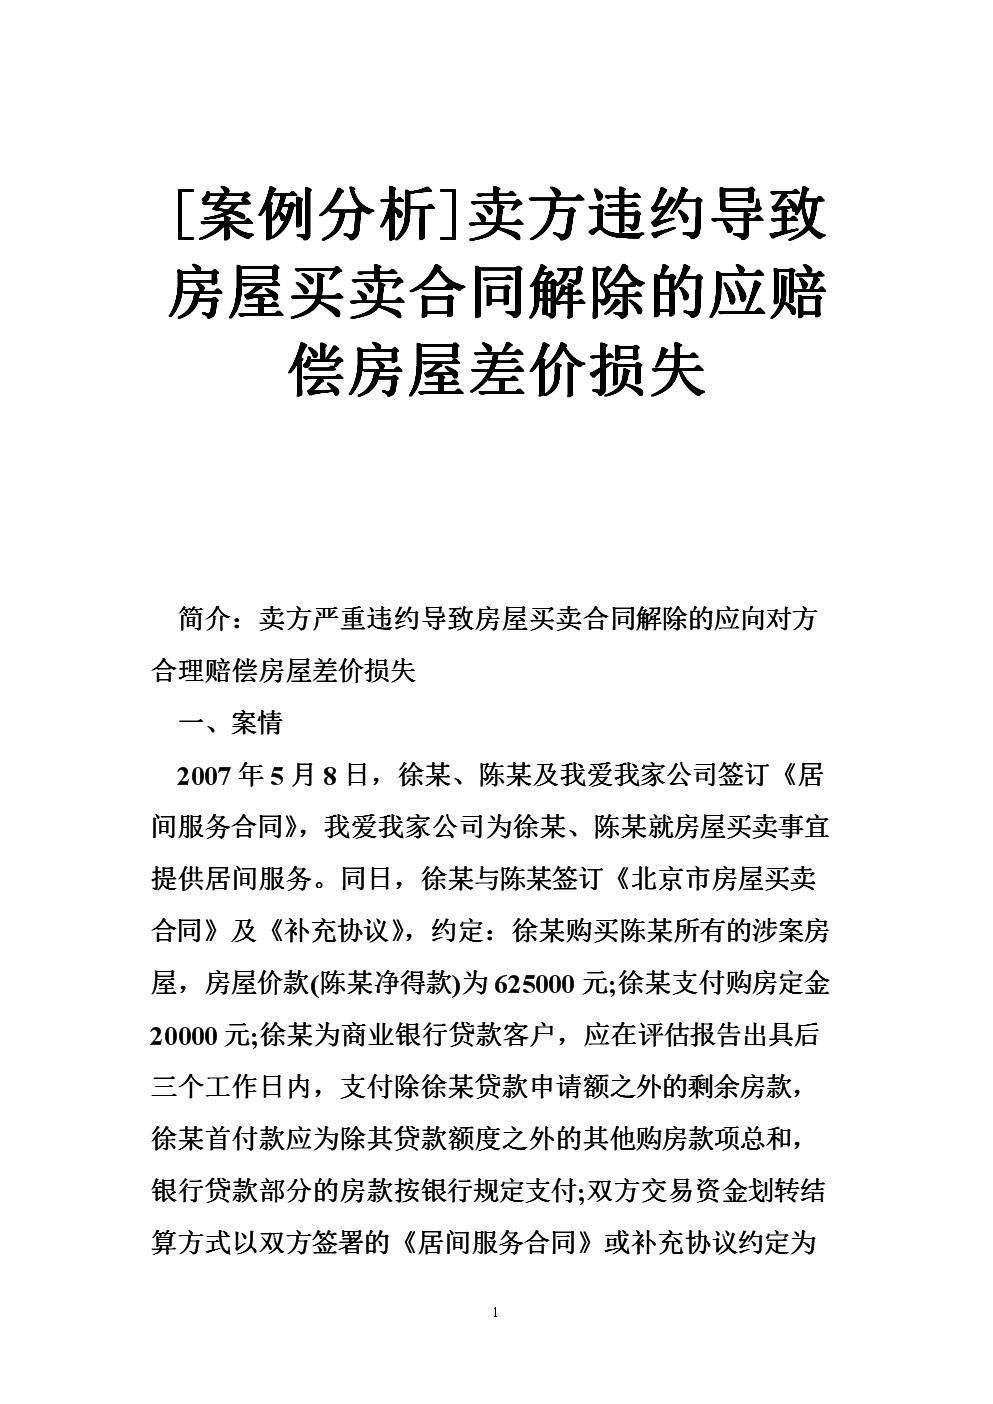 防止刘房东在诉讼期间转移房产